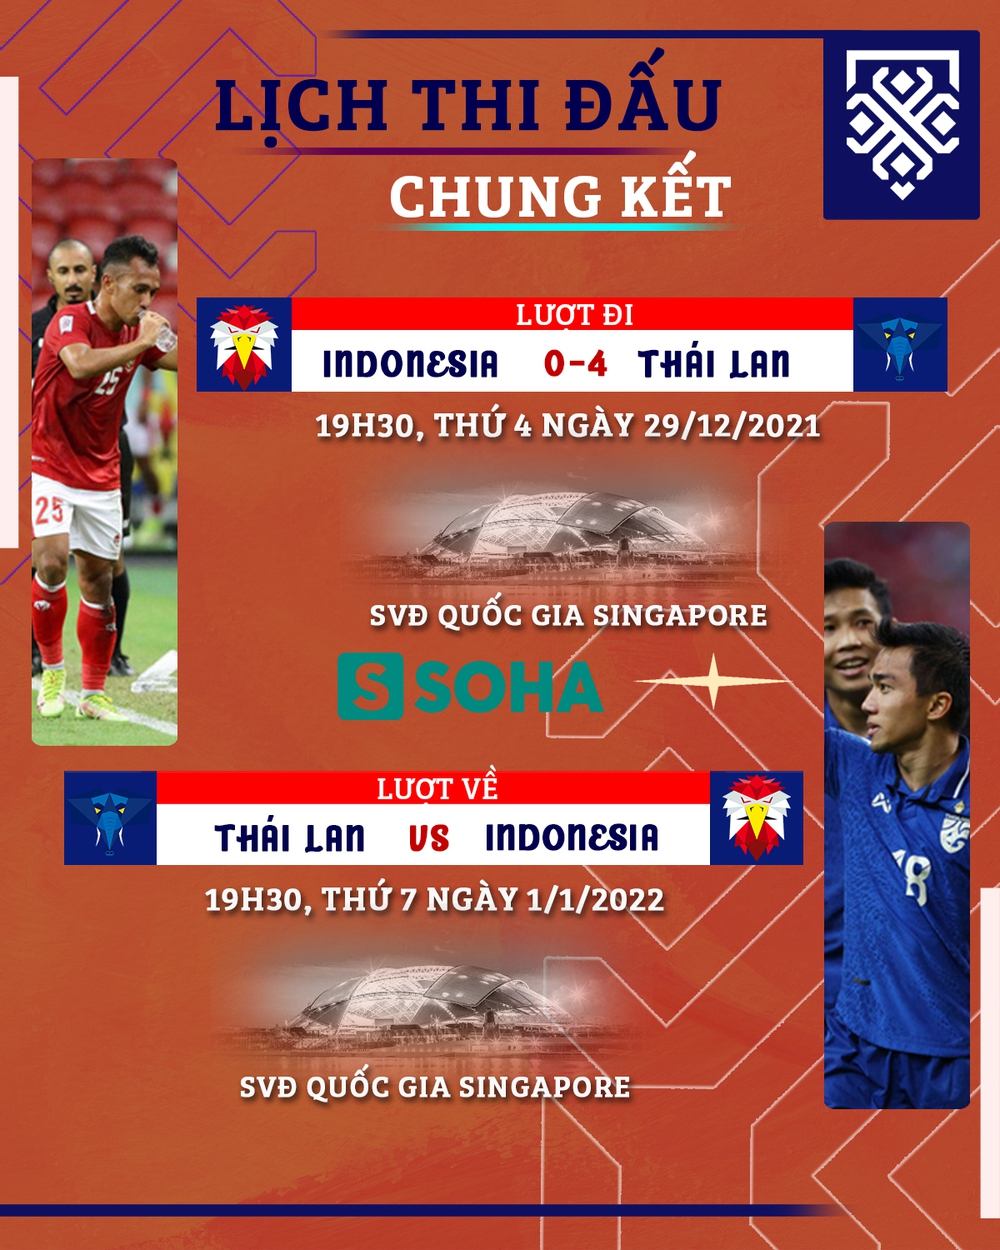 ĐT Indonesia chưa thể vào cùng mâm với Thái Lan & Việt Nam, thua chỉ là việc sớm muộn - Ảnh 6.